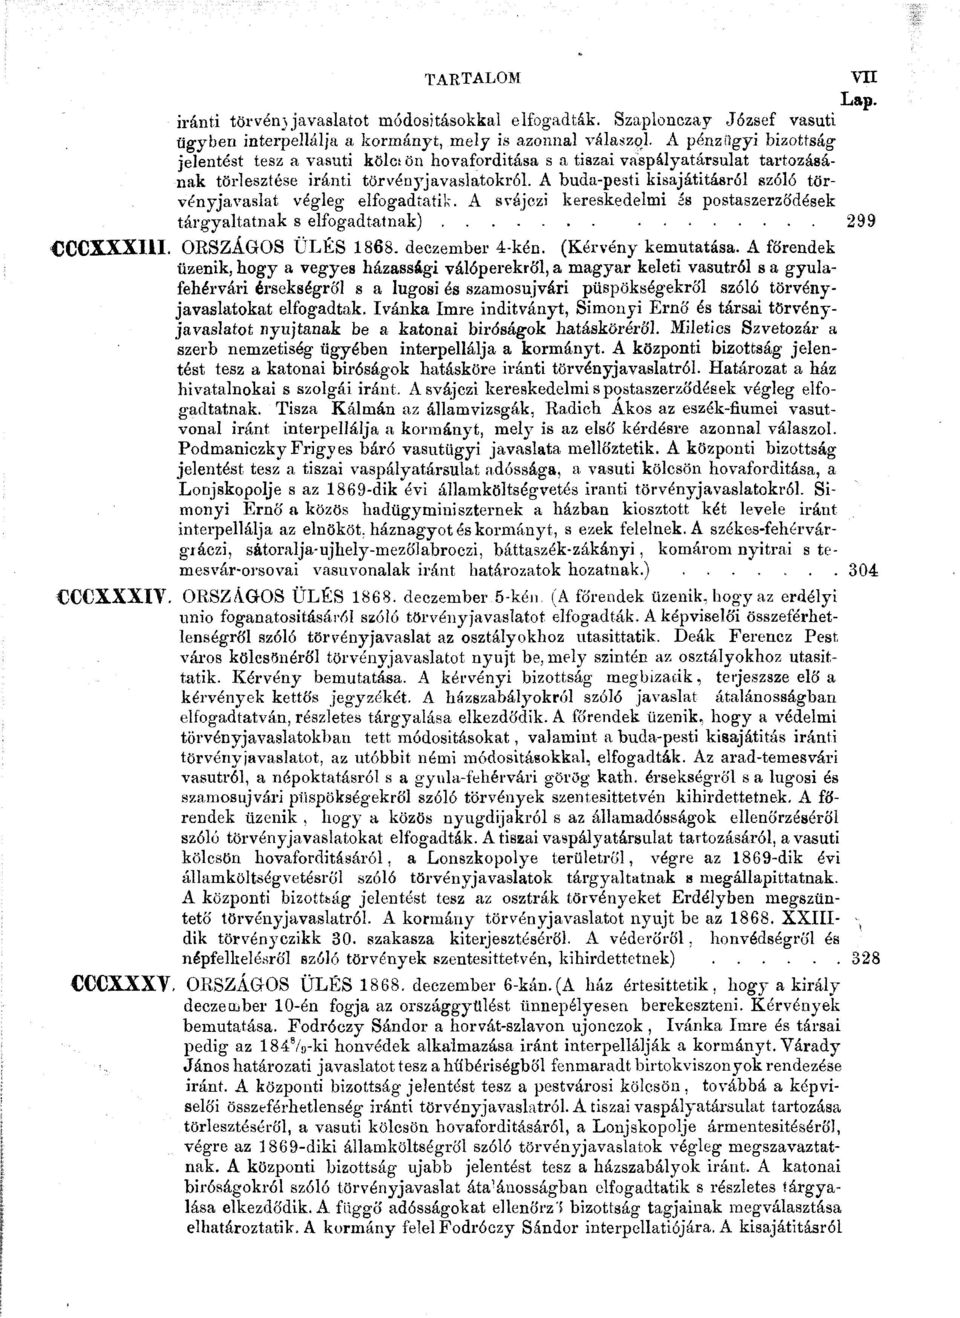 A buda-pesti kisajátításról szóló törvényjavaslat végleg elfogadtatik. A svájczi kereskedelmi ás postaszerződések tárgyaltatnak s elfogadtatnak) 299 CCCXXXI1I. ORSZÁGOS ÜLÉS 1868. deczember 4-kén.